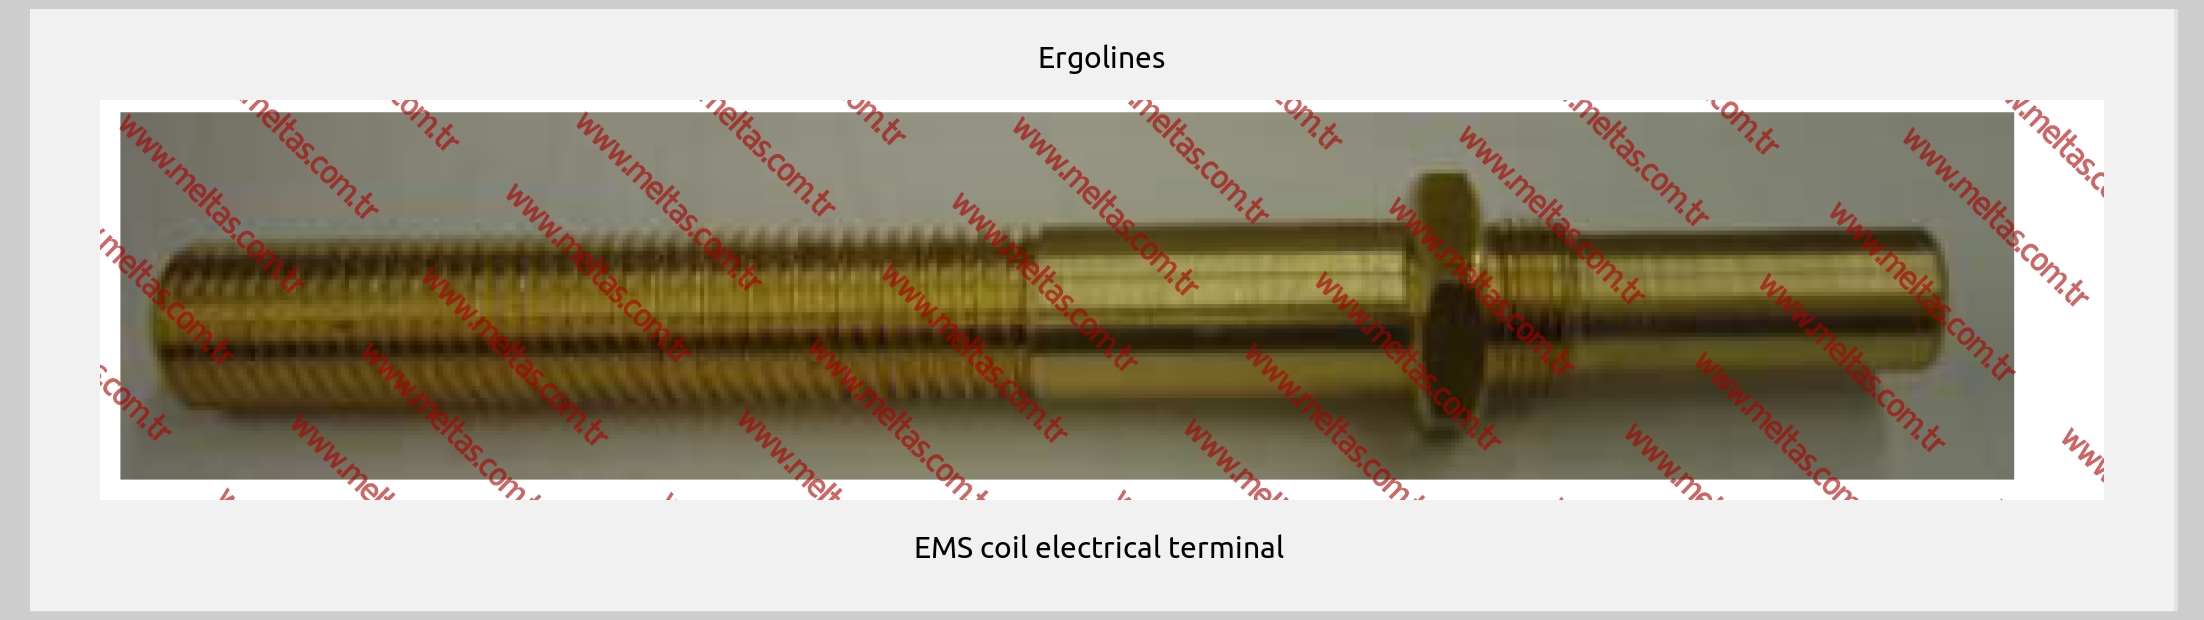 Ergolines - EMS coil electrical terminal 